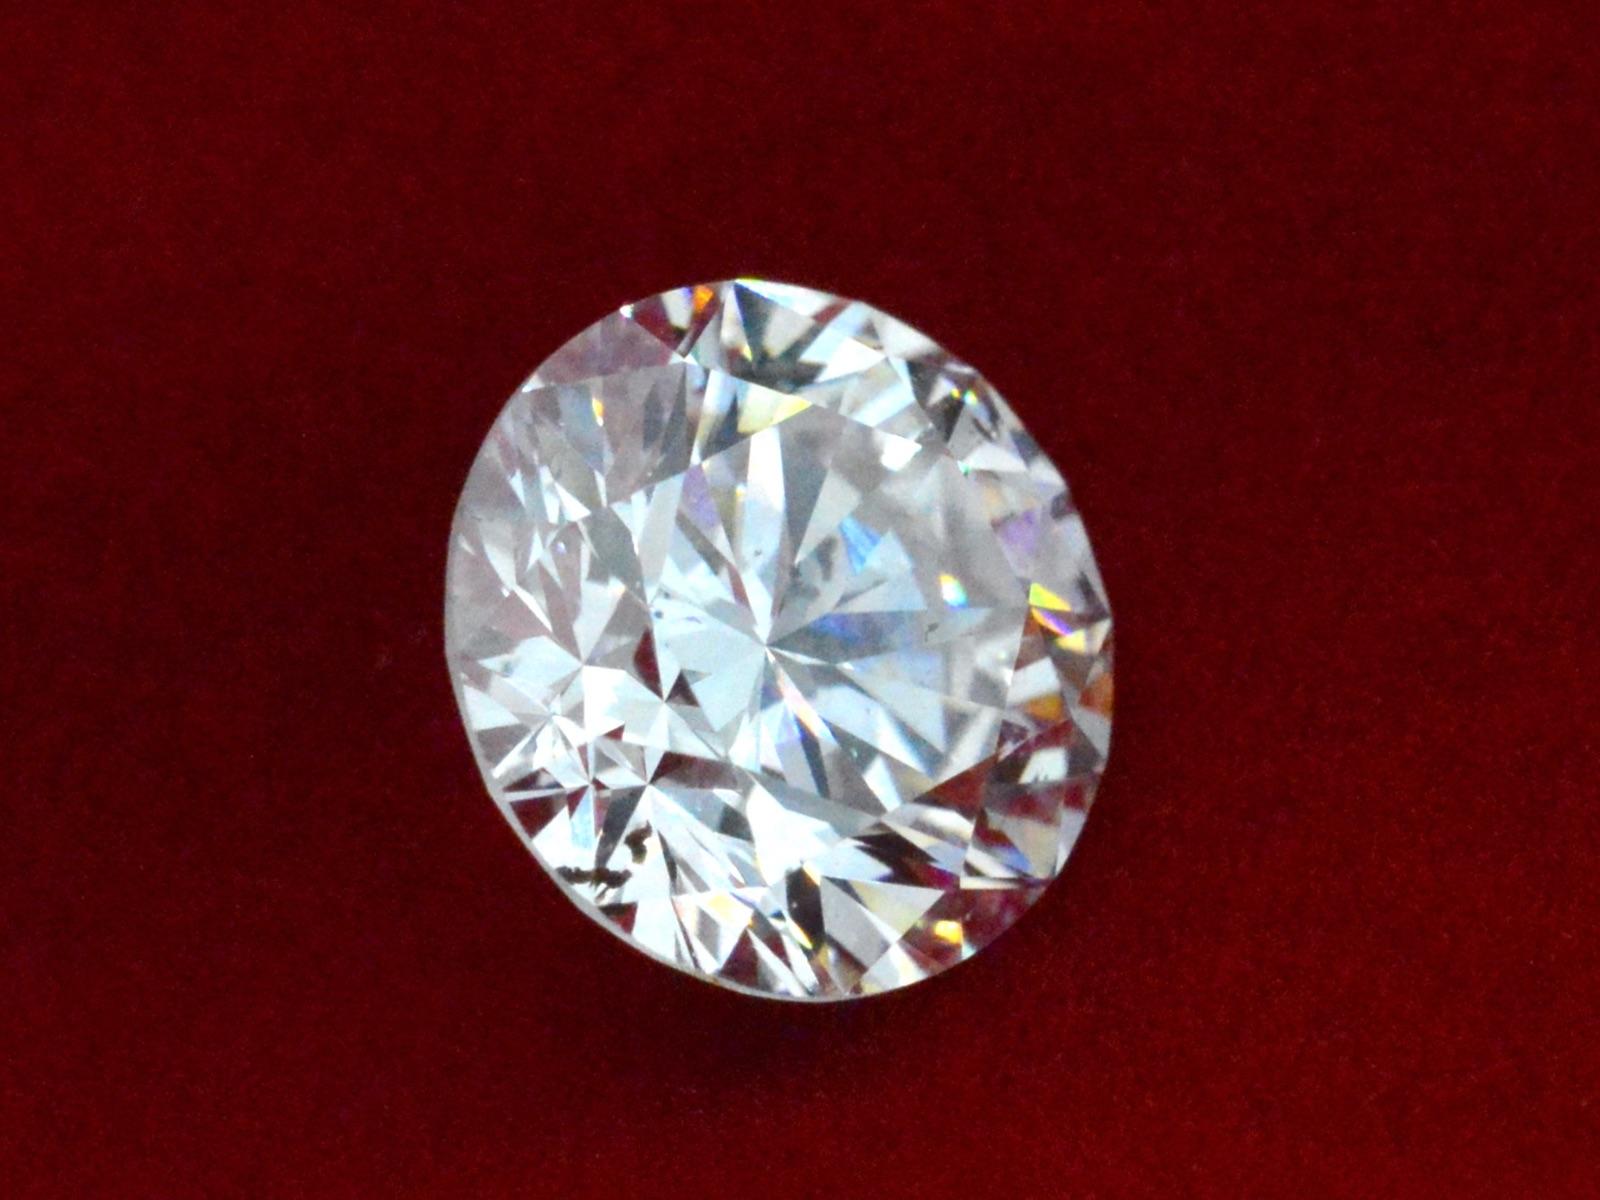 Menge: 1
 Produkt Name: 0,78 Karat Natürlicher Starcut Diamant mit Lasergravur
 Marke: Starcut
 Schliffform: Brillantschliff modifiziert
 Gewicht: 0,78 Karat
 Farbe: D
 Reinheit: VVS1
 Verpackung: IGI-versiegelt
 Bescheinigungsnummer: 533204199.
